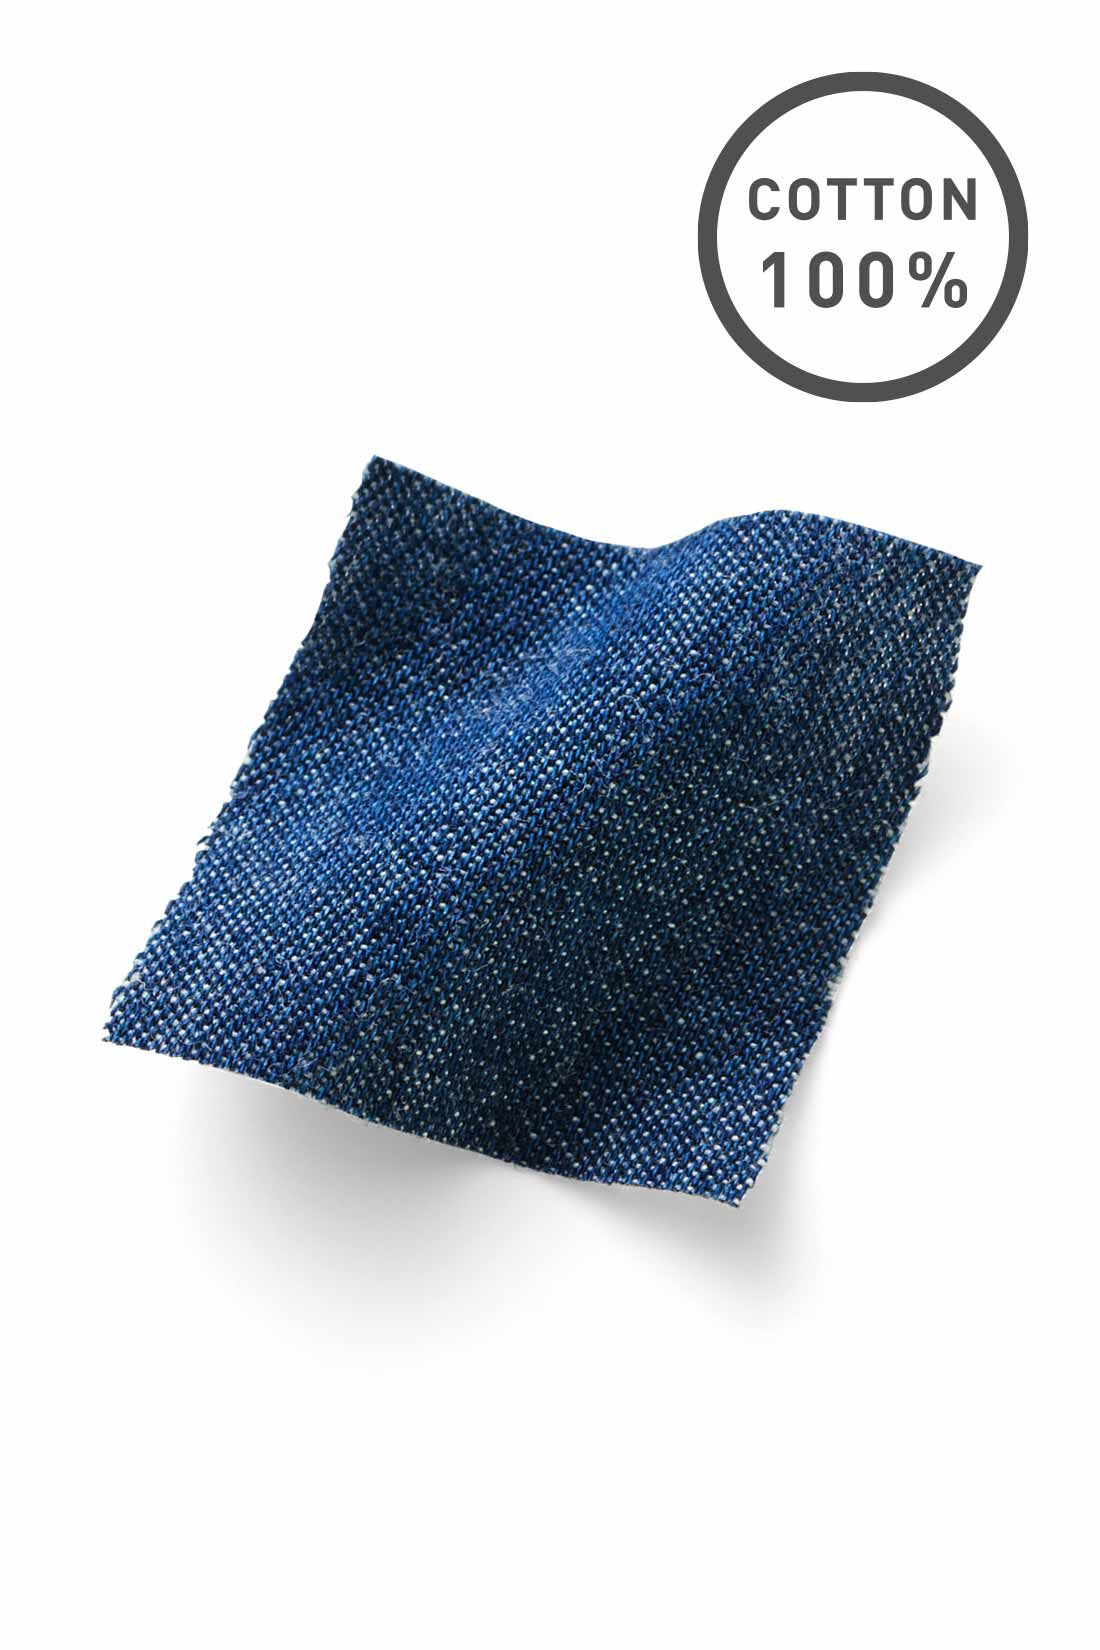 Live in  comfort|リブ イン コンフォート　雰囲気あるコーデがつくれる 綿100％の軽やかぽんわりデニムパンツ〈ブルー〉【ぽんわりパンツまとめ買いキャンペーン】|さっくり軽やかな風合いのライトオンスの綿100％のデニム素材。